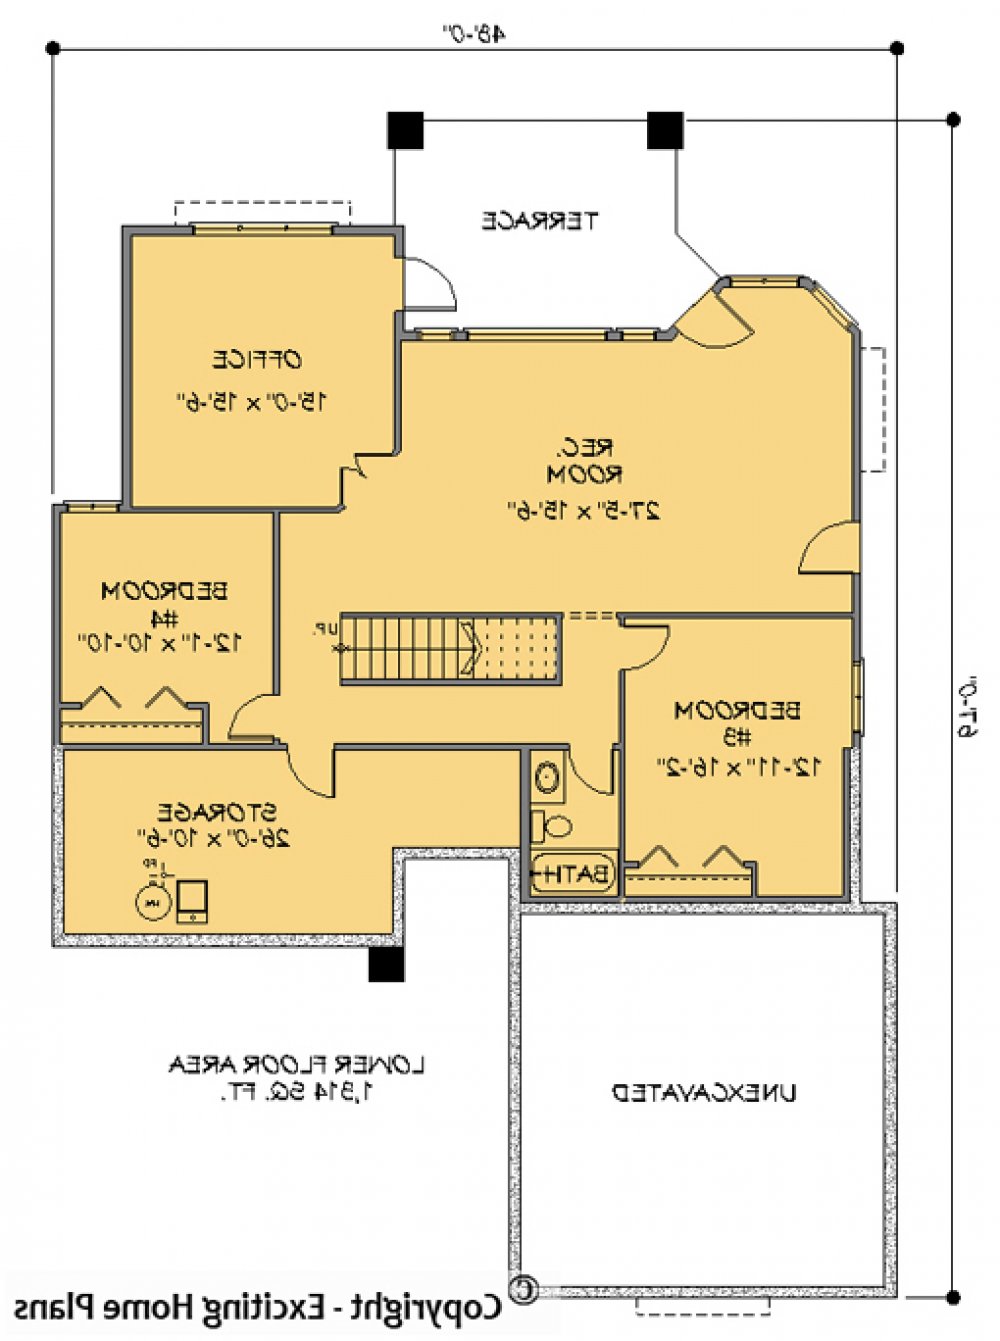 House Plan E1057-10  Lower Floor Plan REVERSE